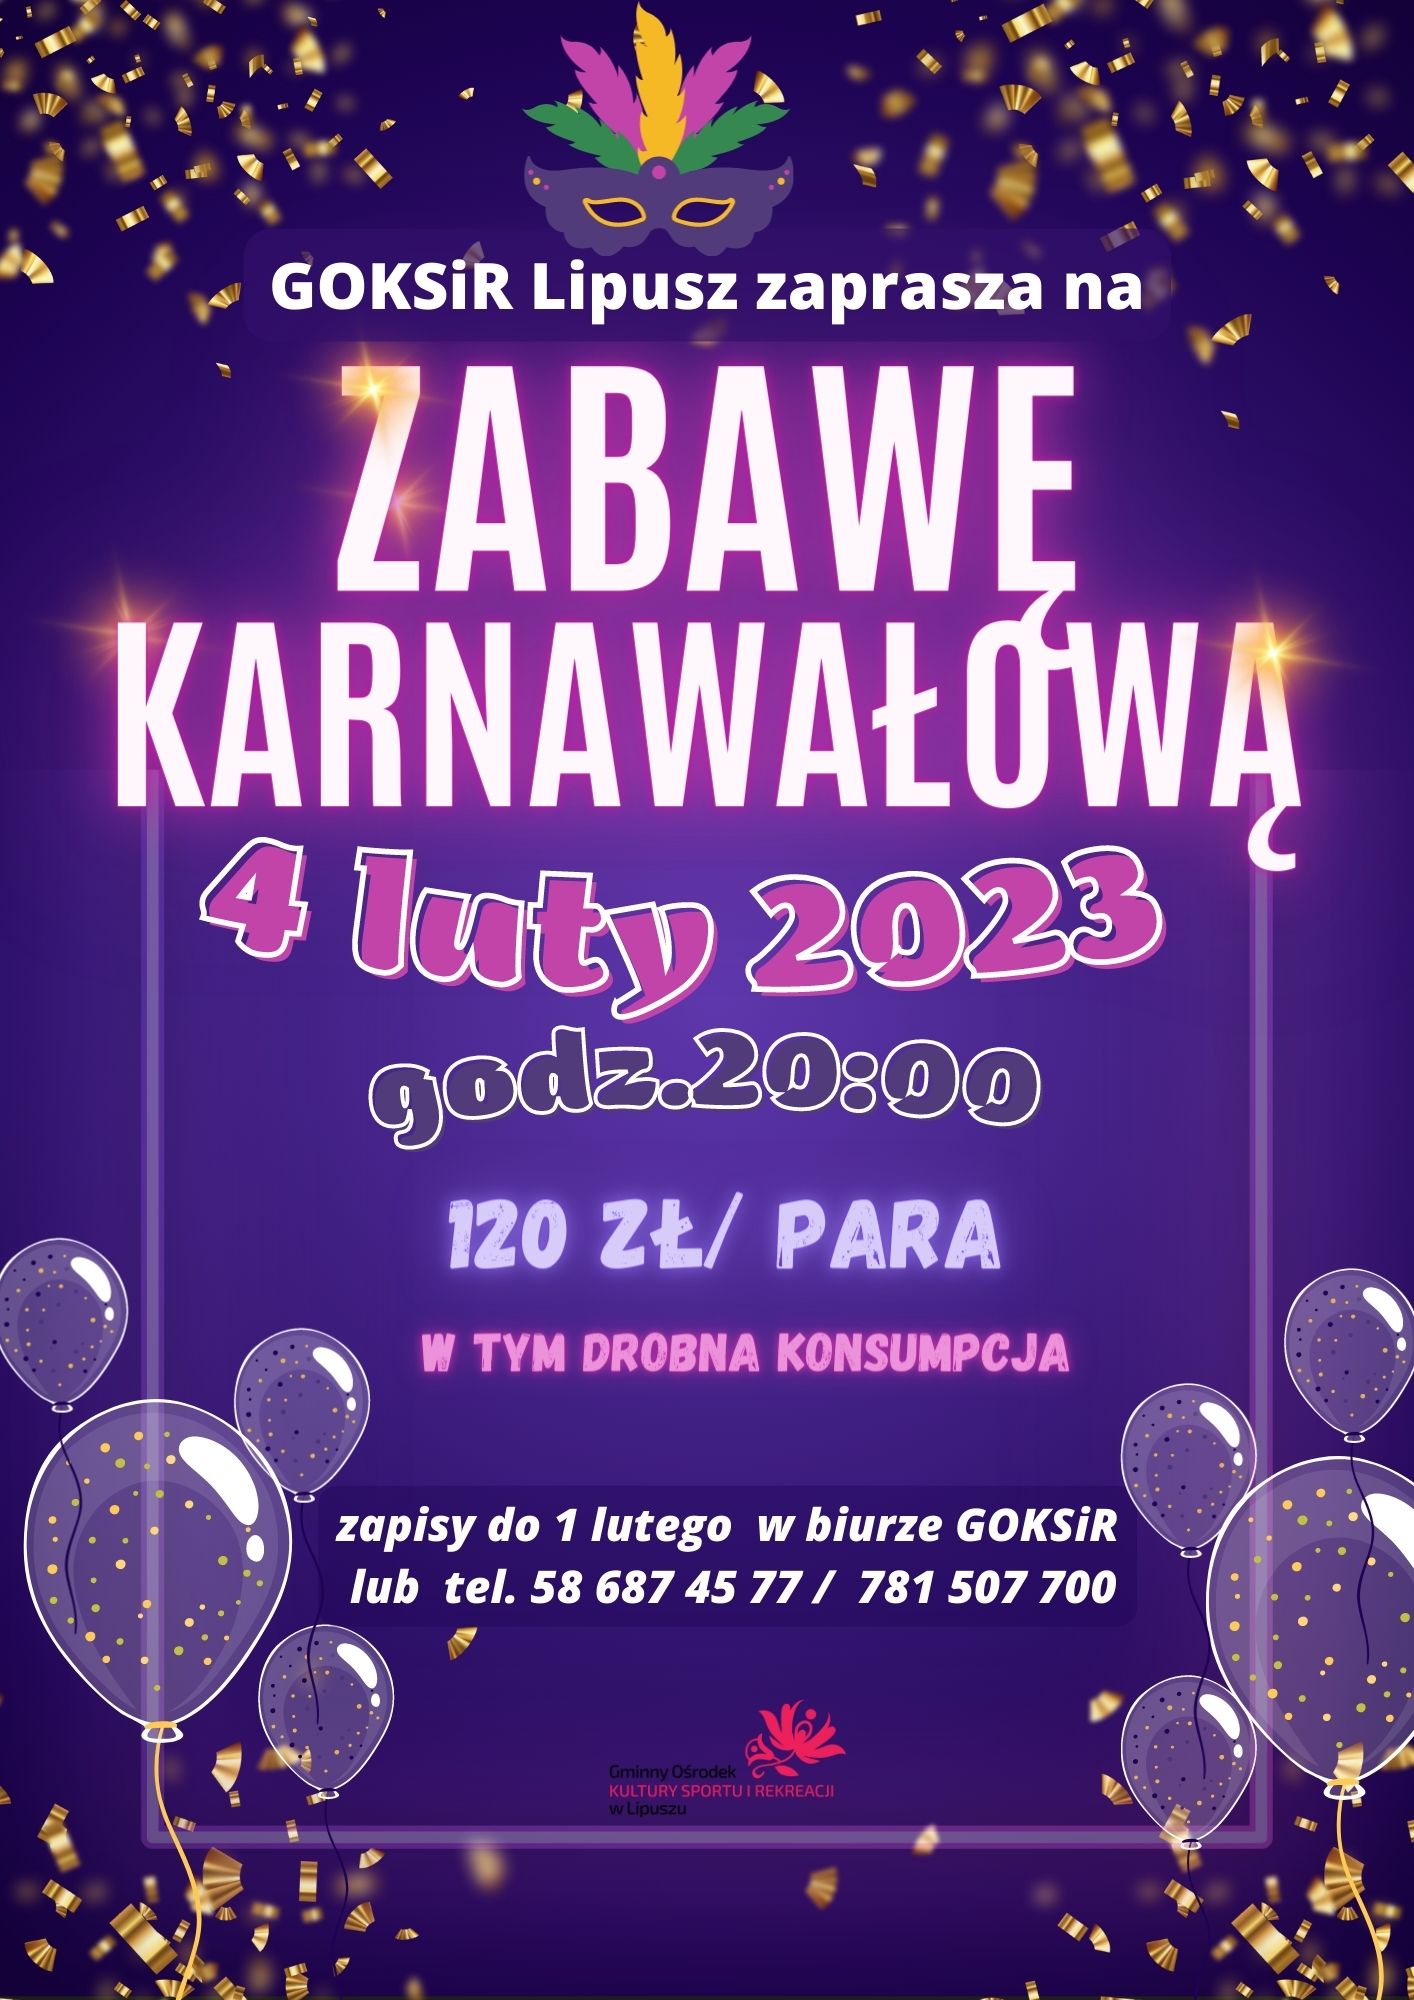 plakat z informacją o zabawie karnawałowej w GOKSiR Lipusz